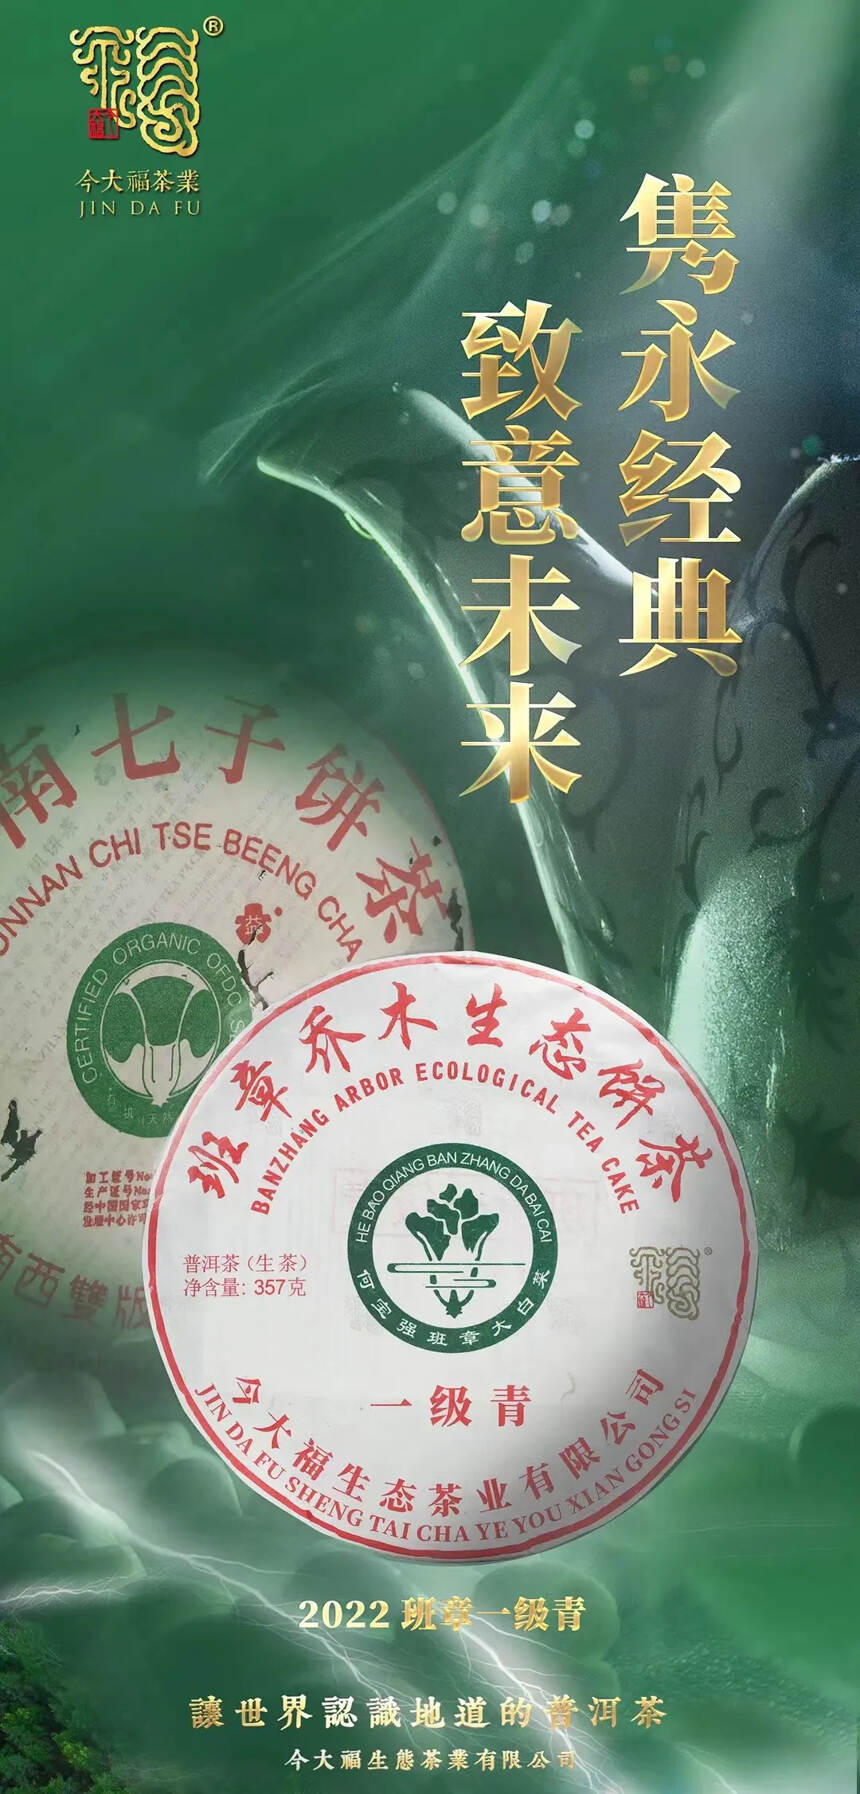 2022年今大福茶业-班章一级青
班章乔木生态饼茶，